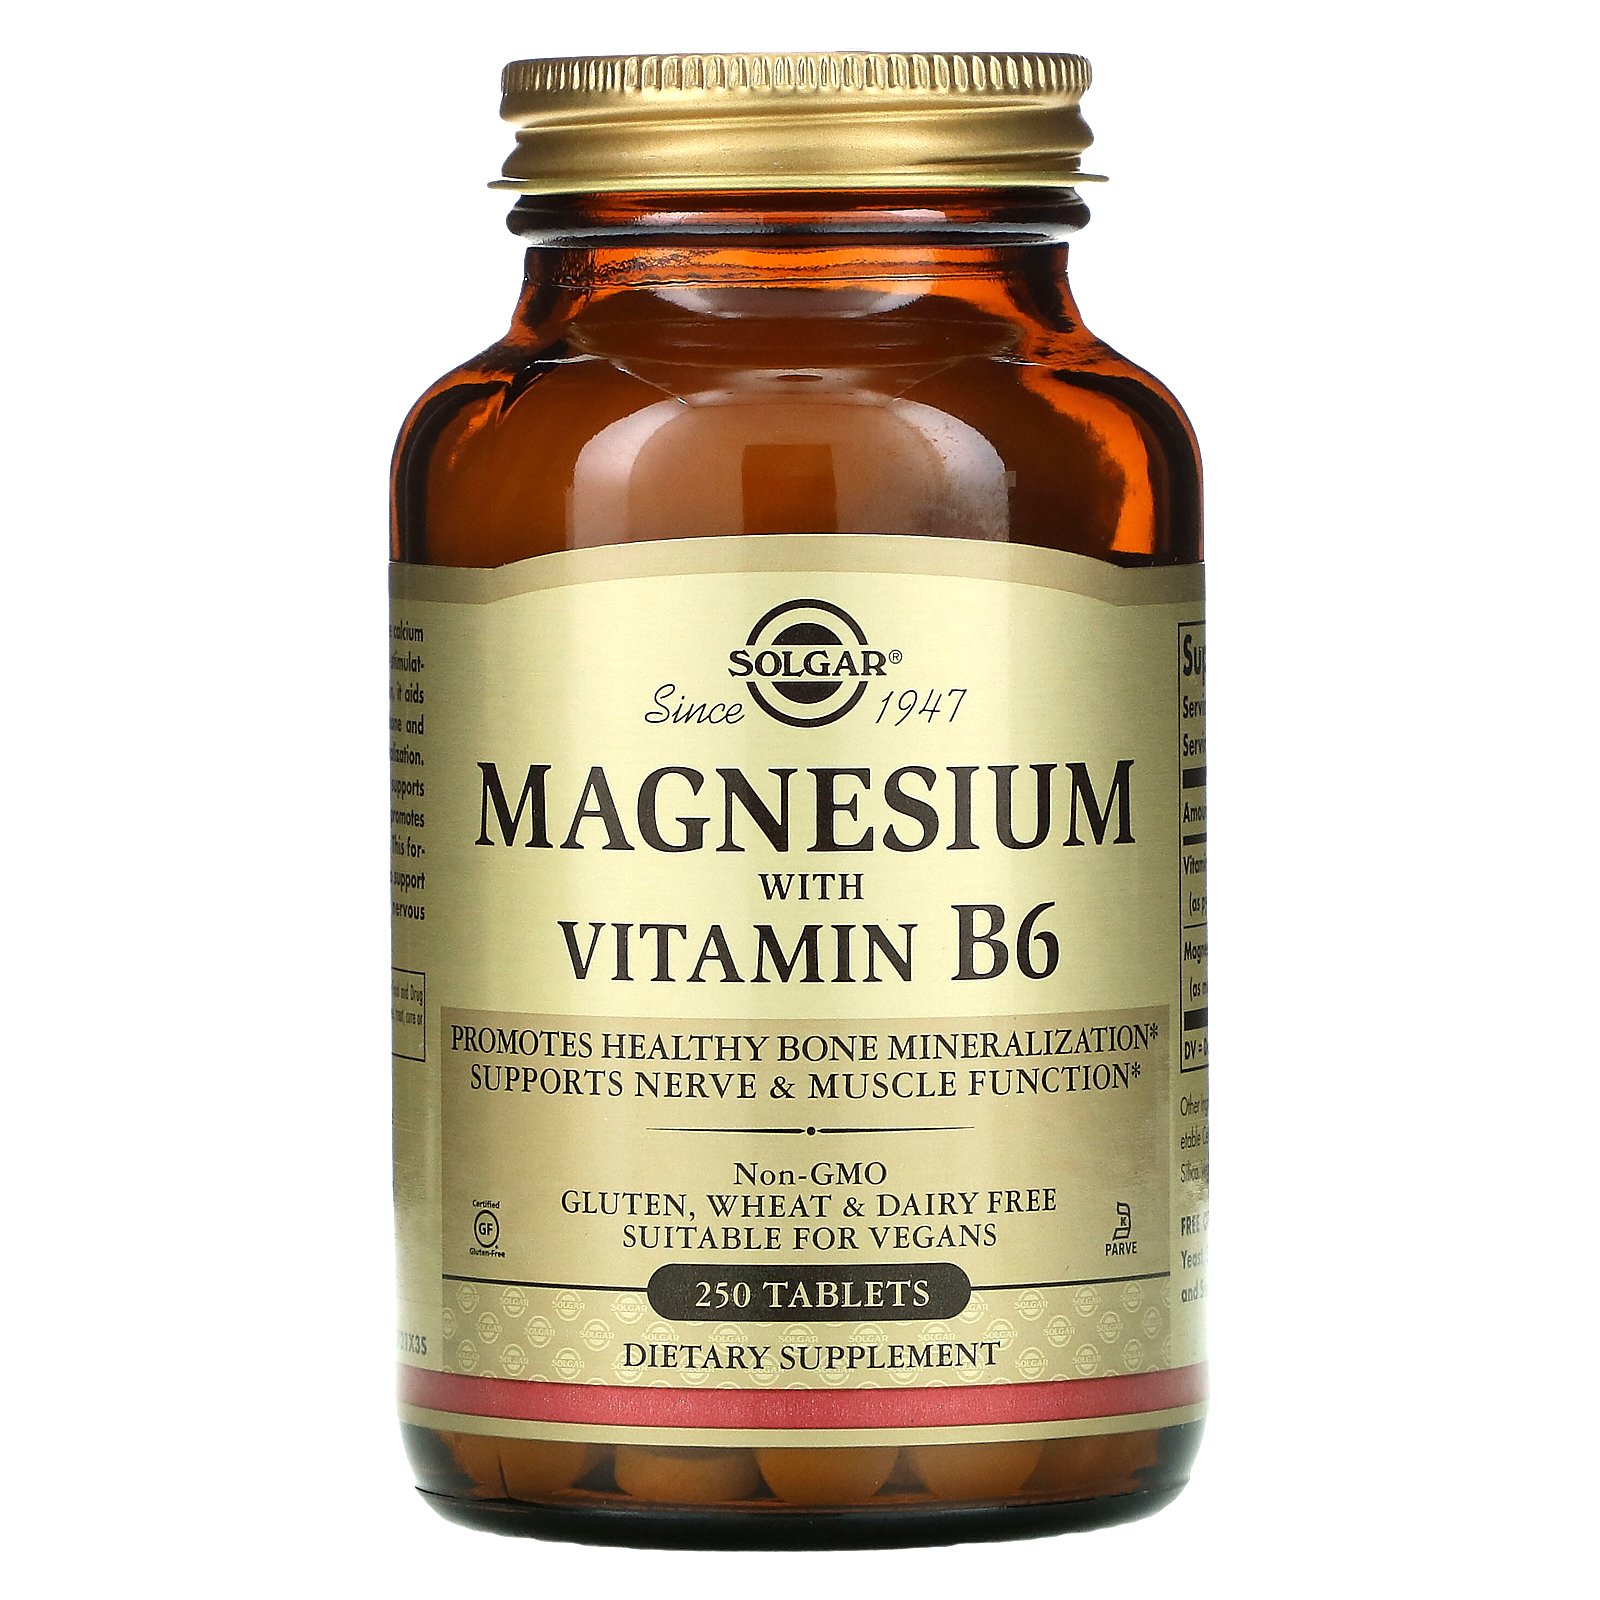 magnesium vitamin b6